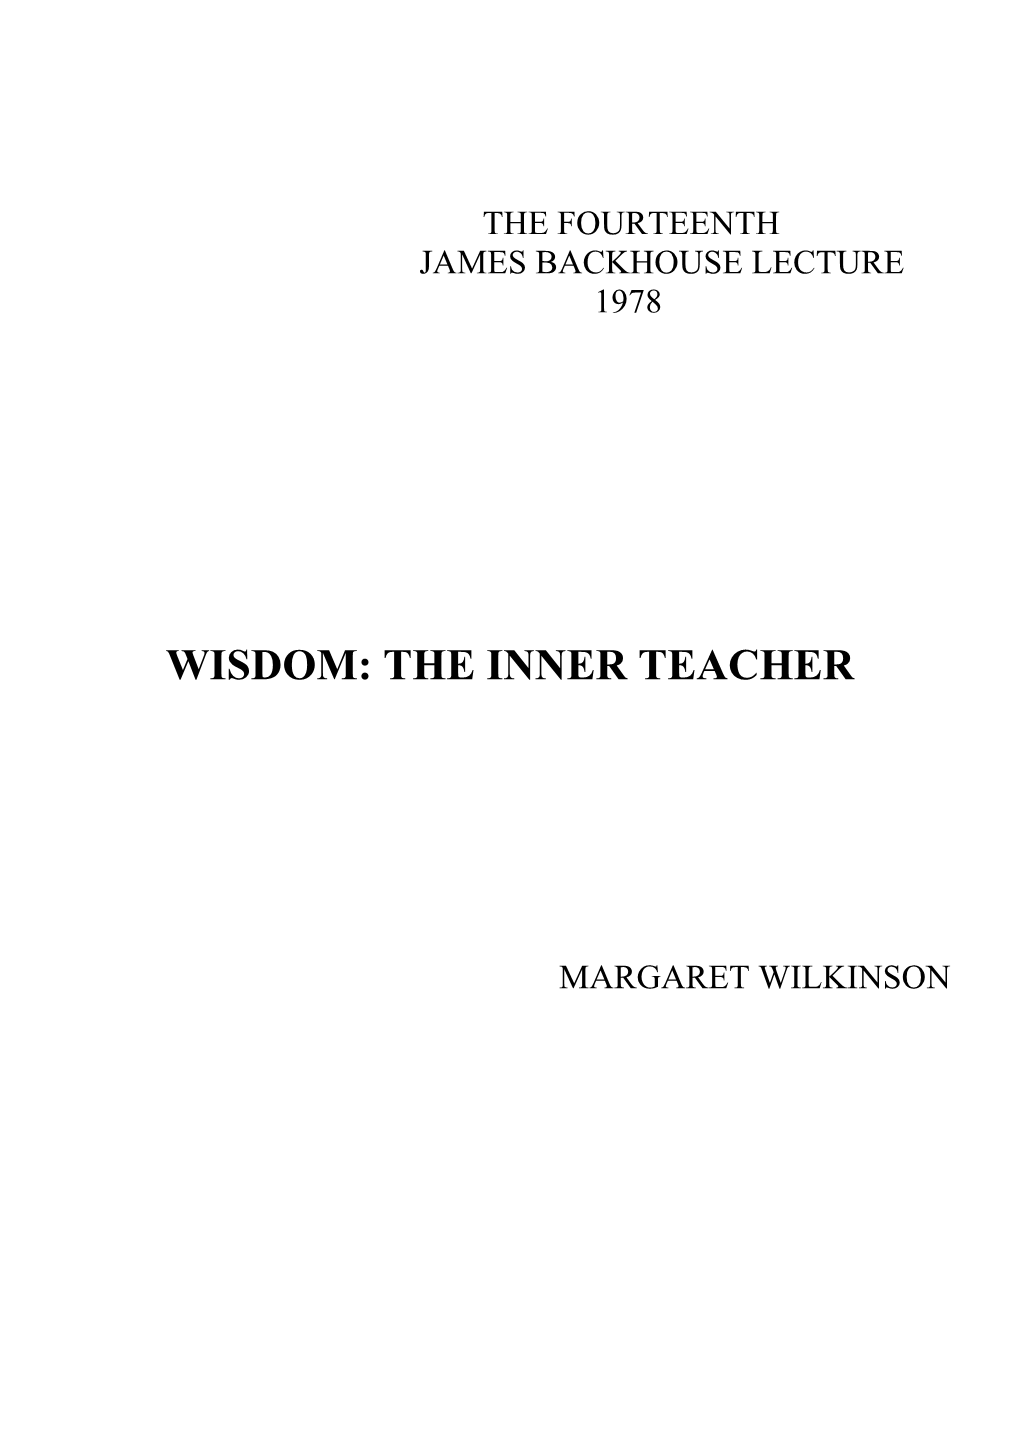 Wisdom: the Inner Teacher